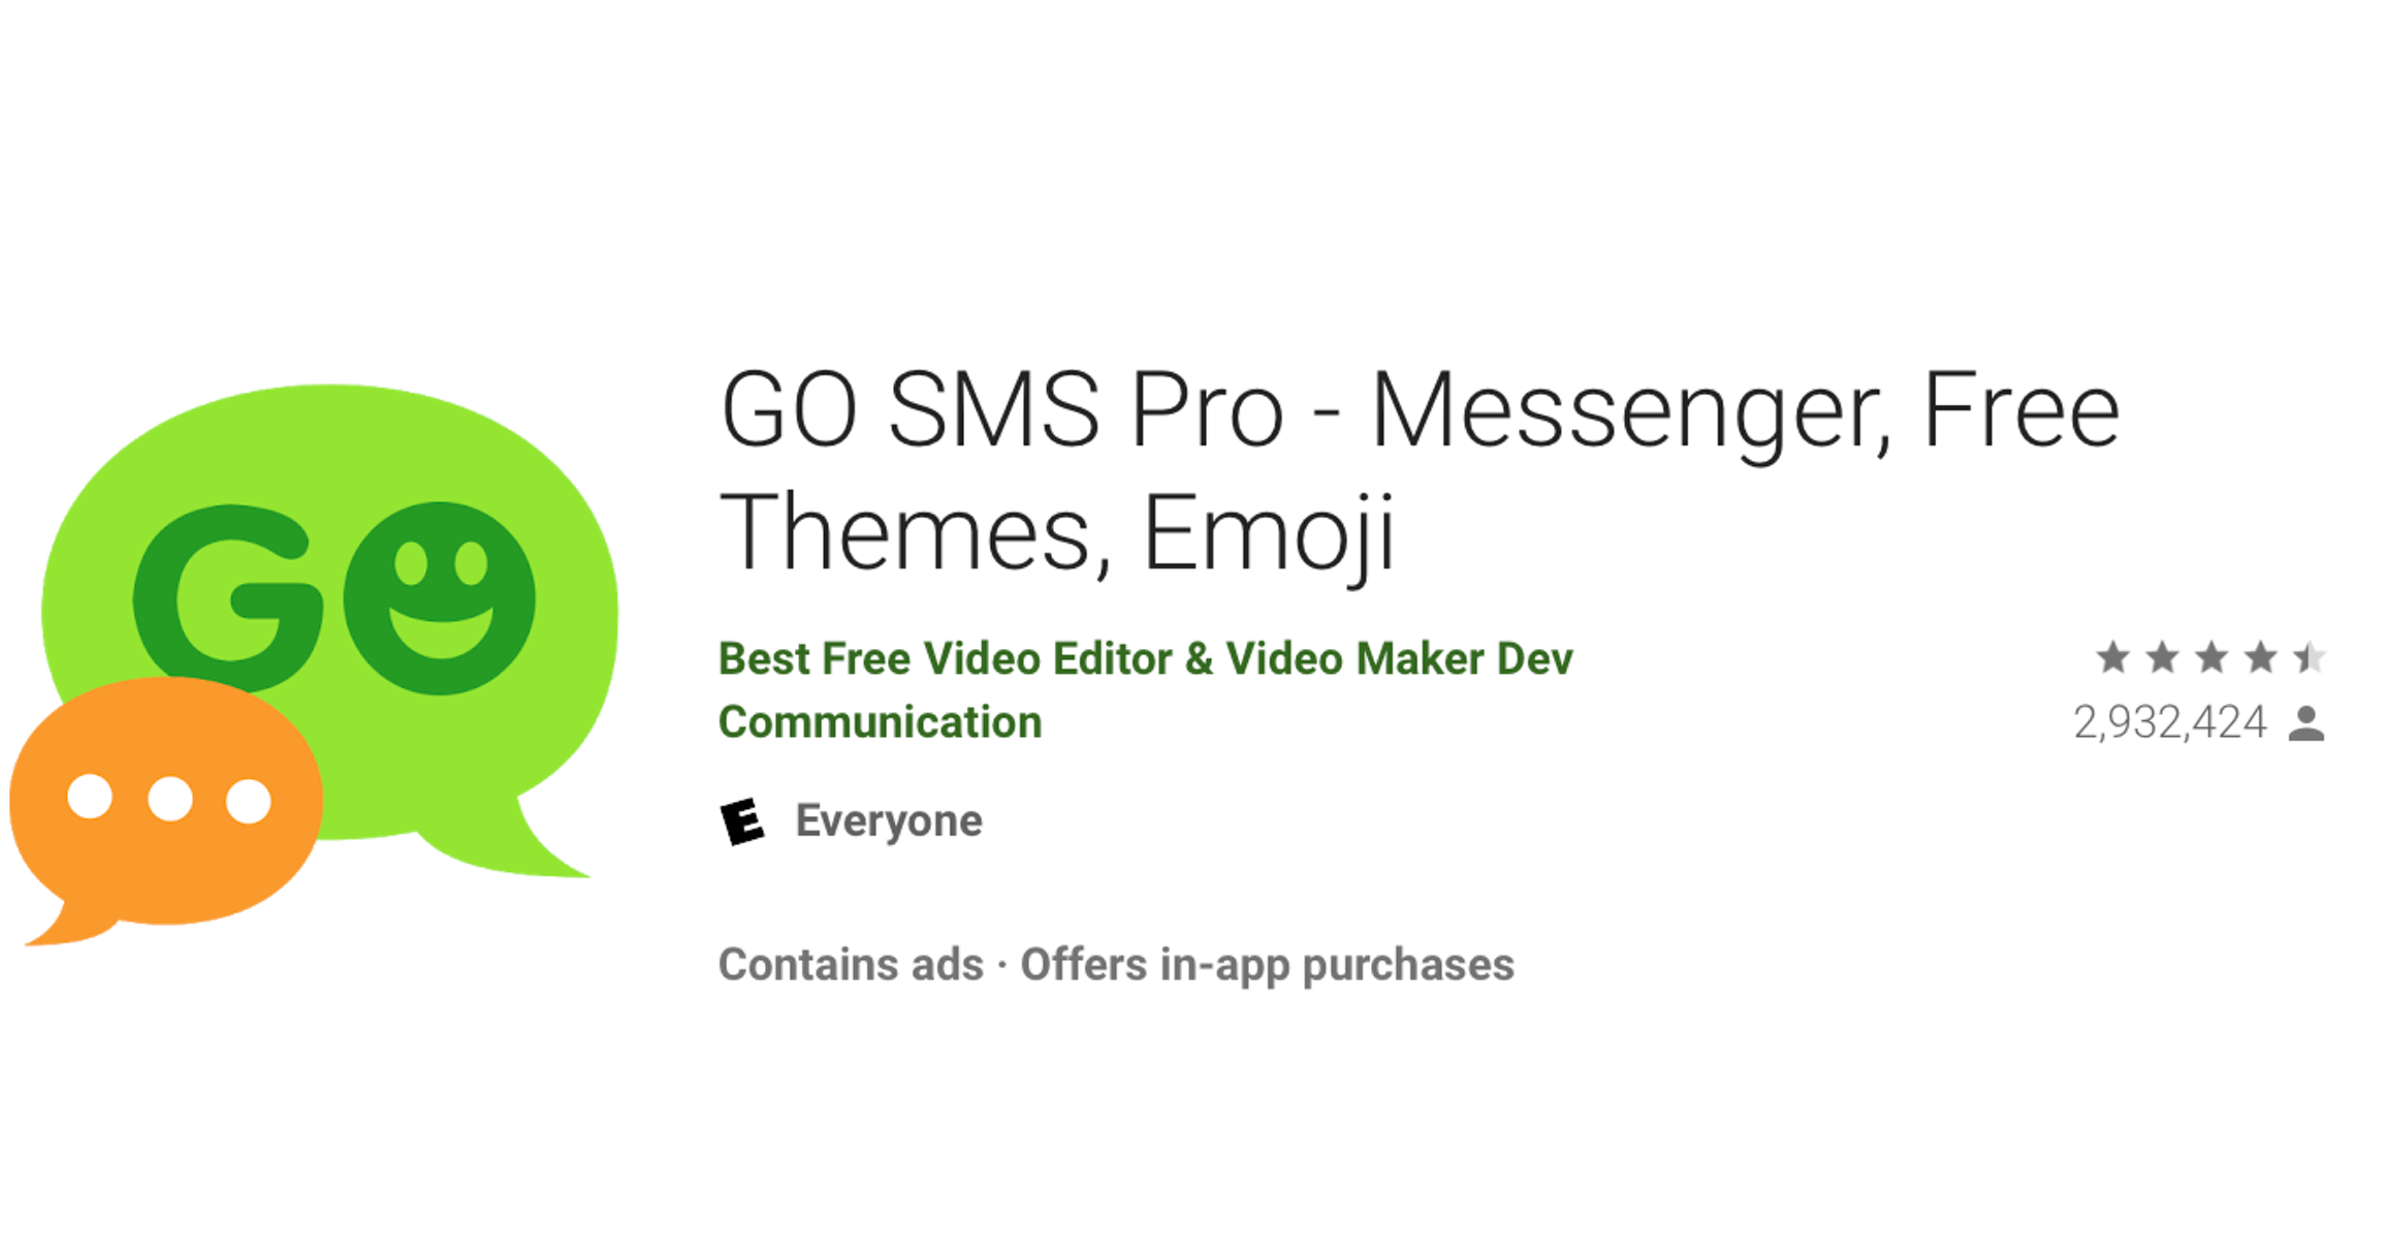 La popular aplicación de mensajería de Android Go SMS Pro ha revelado millones de fotos y archivos privados